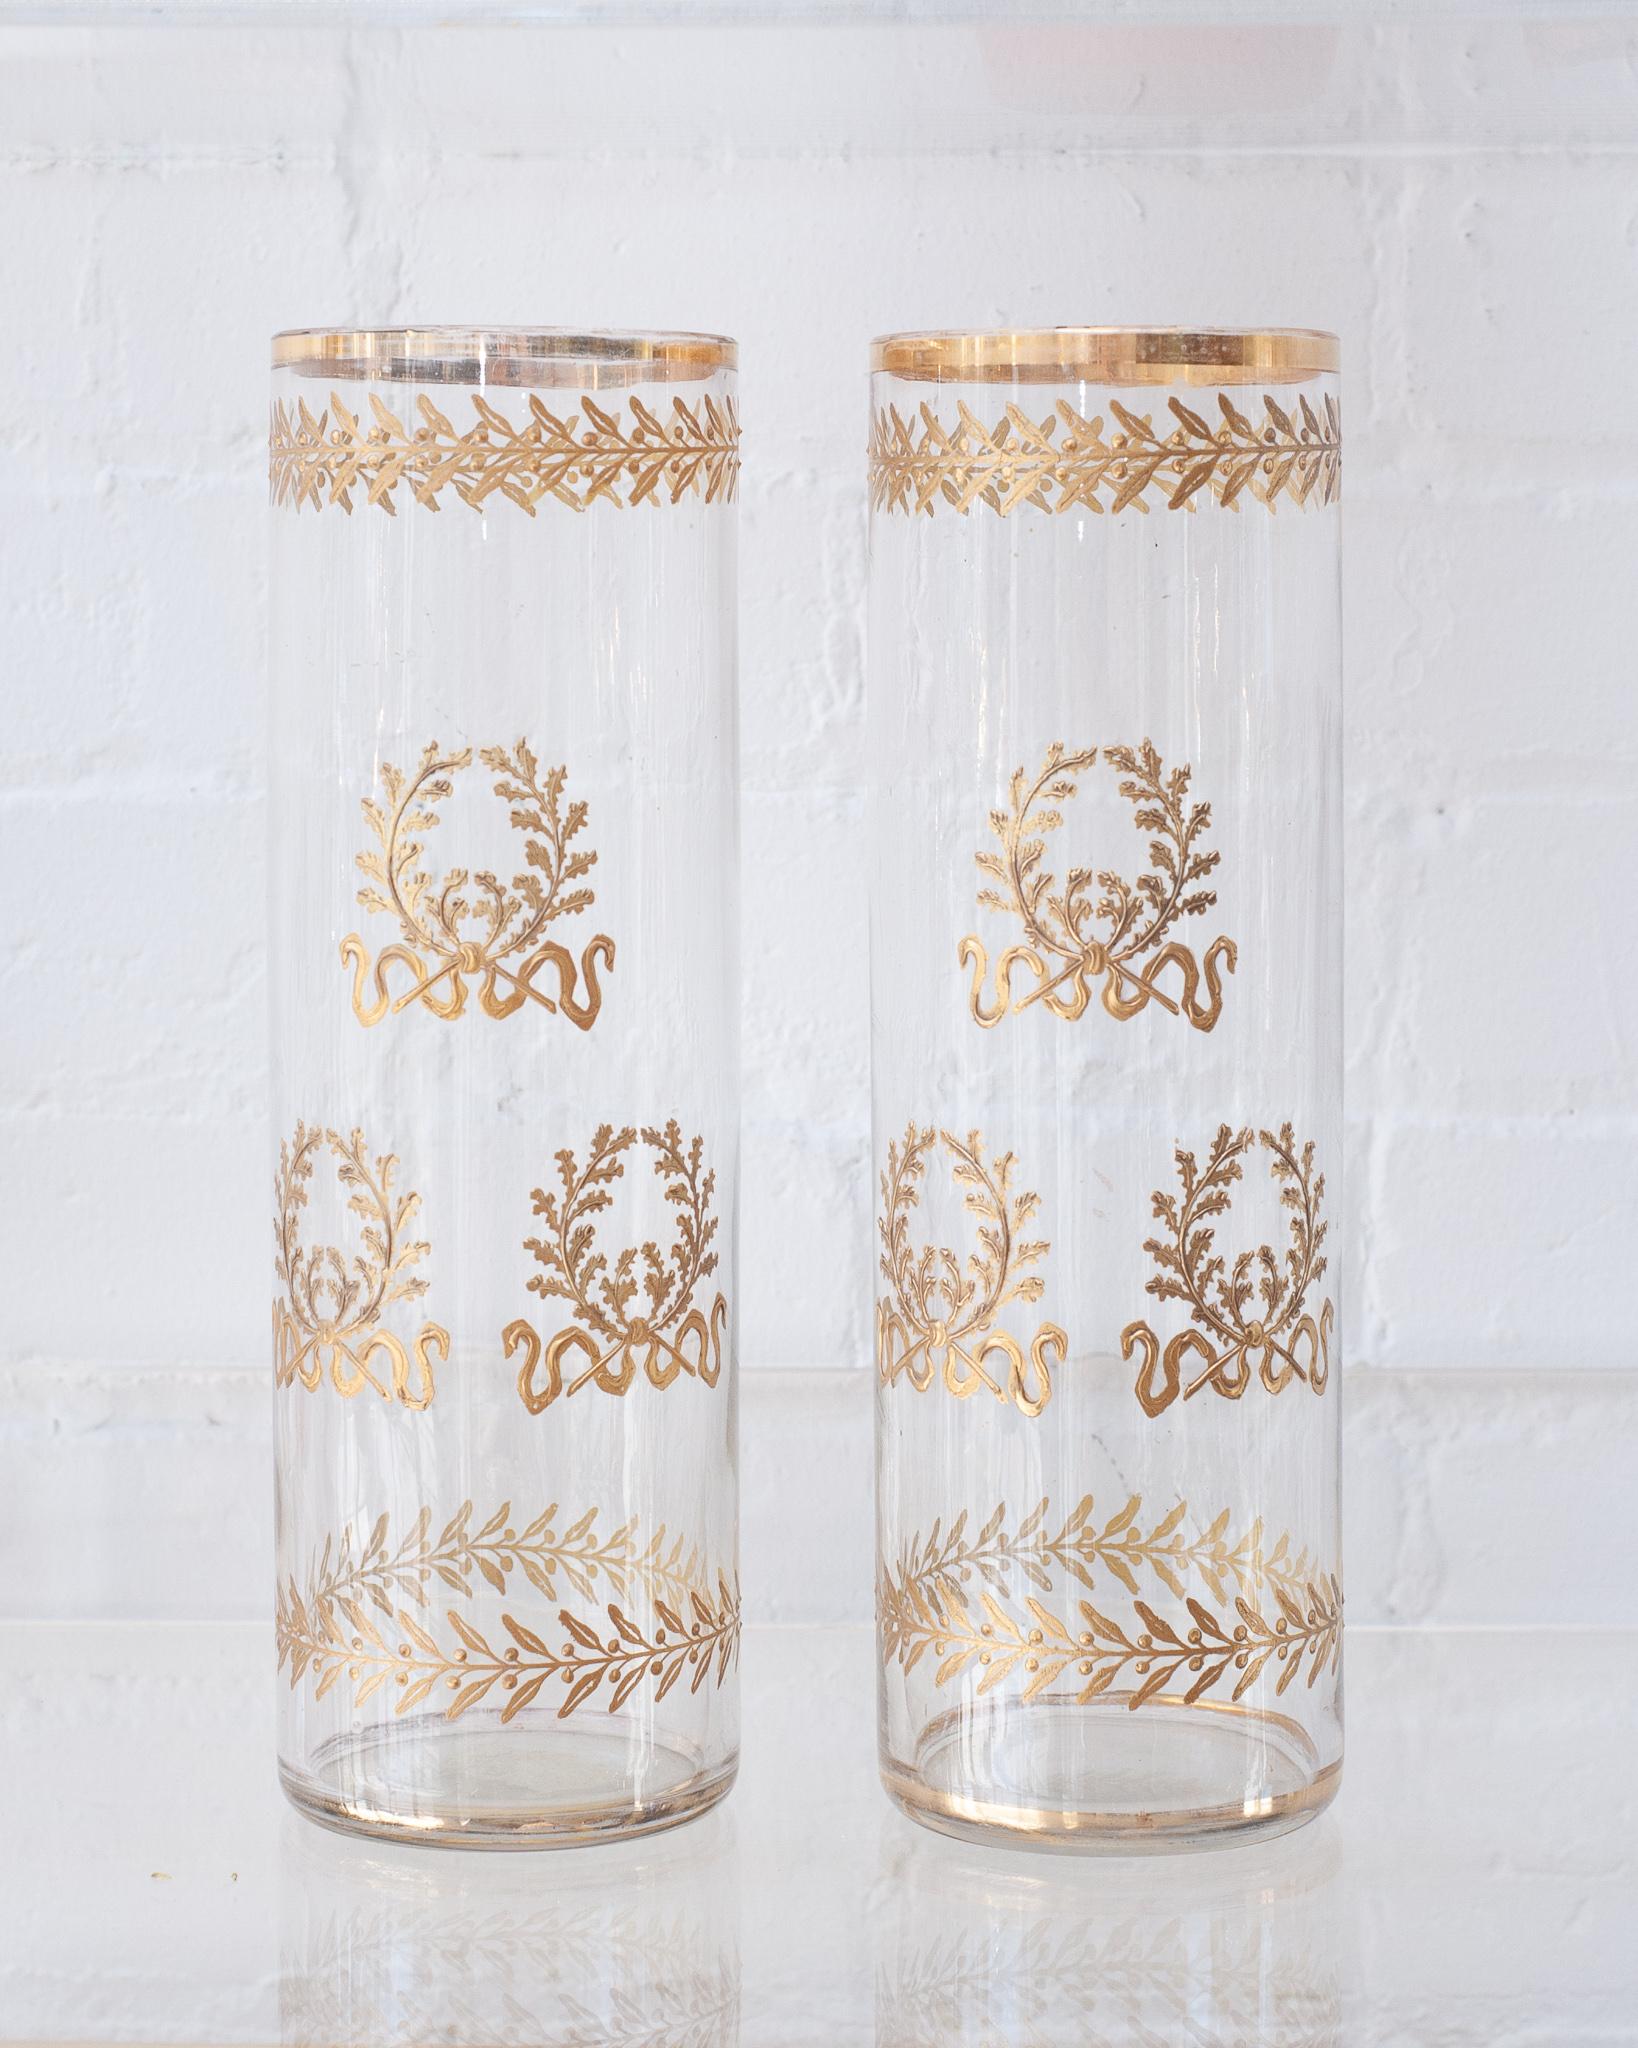 Une magnifique paire de vases droits en cristal français d'époque Empire. Délicatement dorés avec des couronnes de bronze doré, ces vases à l'élégance intemporelle attendent d'être remplis de fleurs fraîches.